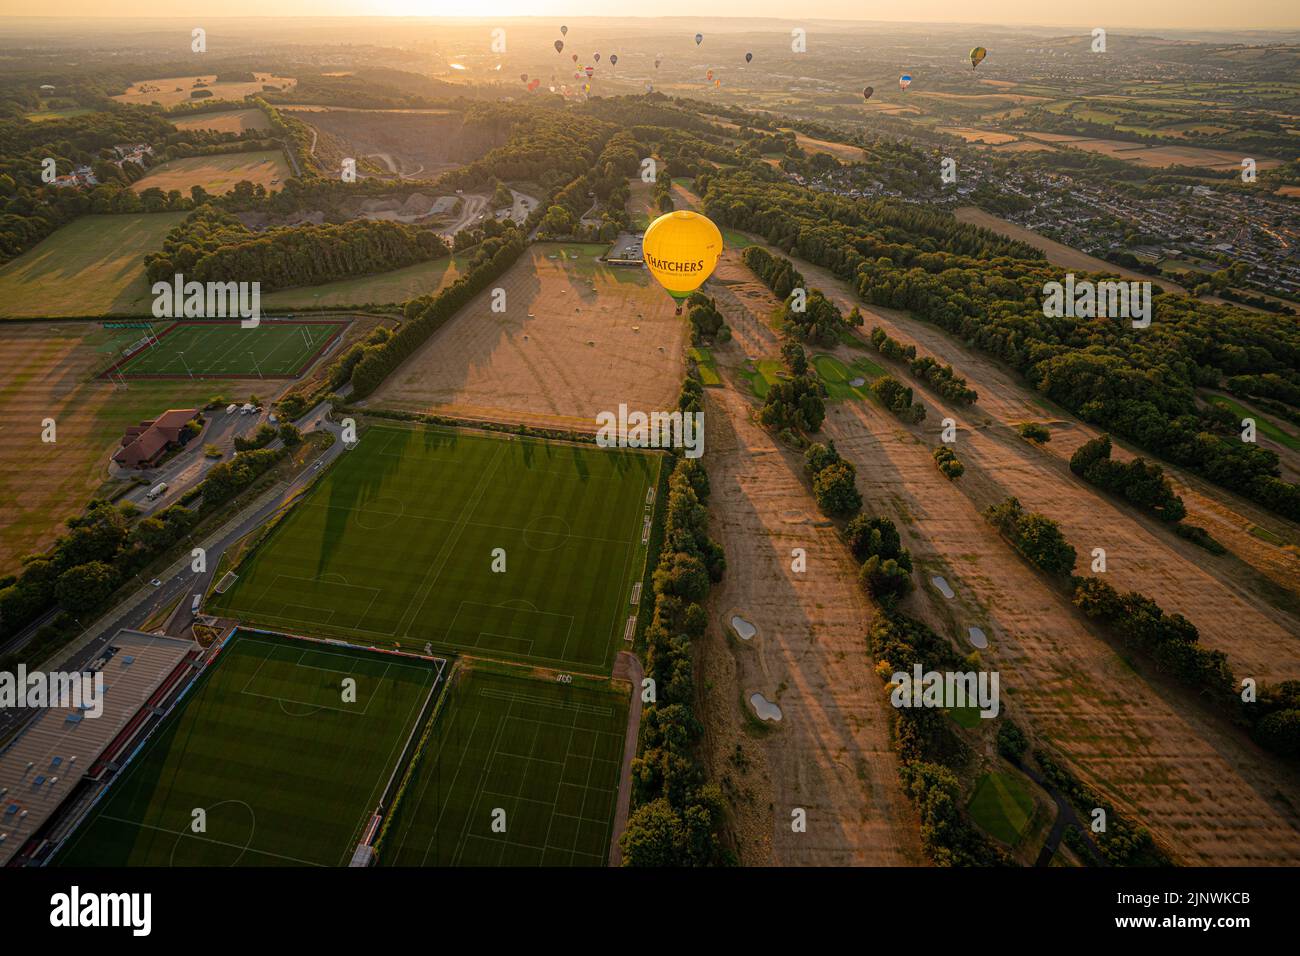 Una mongolfiera vola su un campo da golf dorato e appollaiato la mattina presto, come una siccità è stata dichiarata per parti dell'Inghilterra dopo l'estate più secca per 50 anni. Data immagine: Domenica 14 agosto 2022. Foto Stock